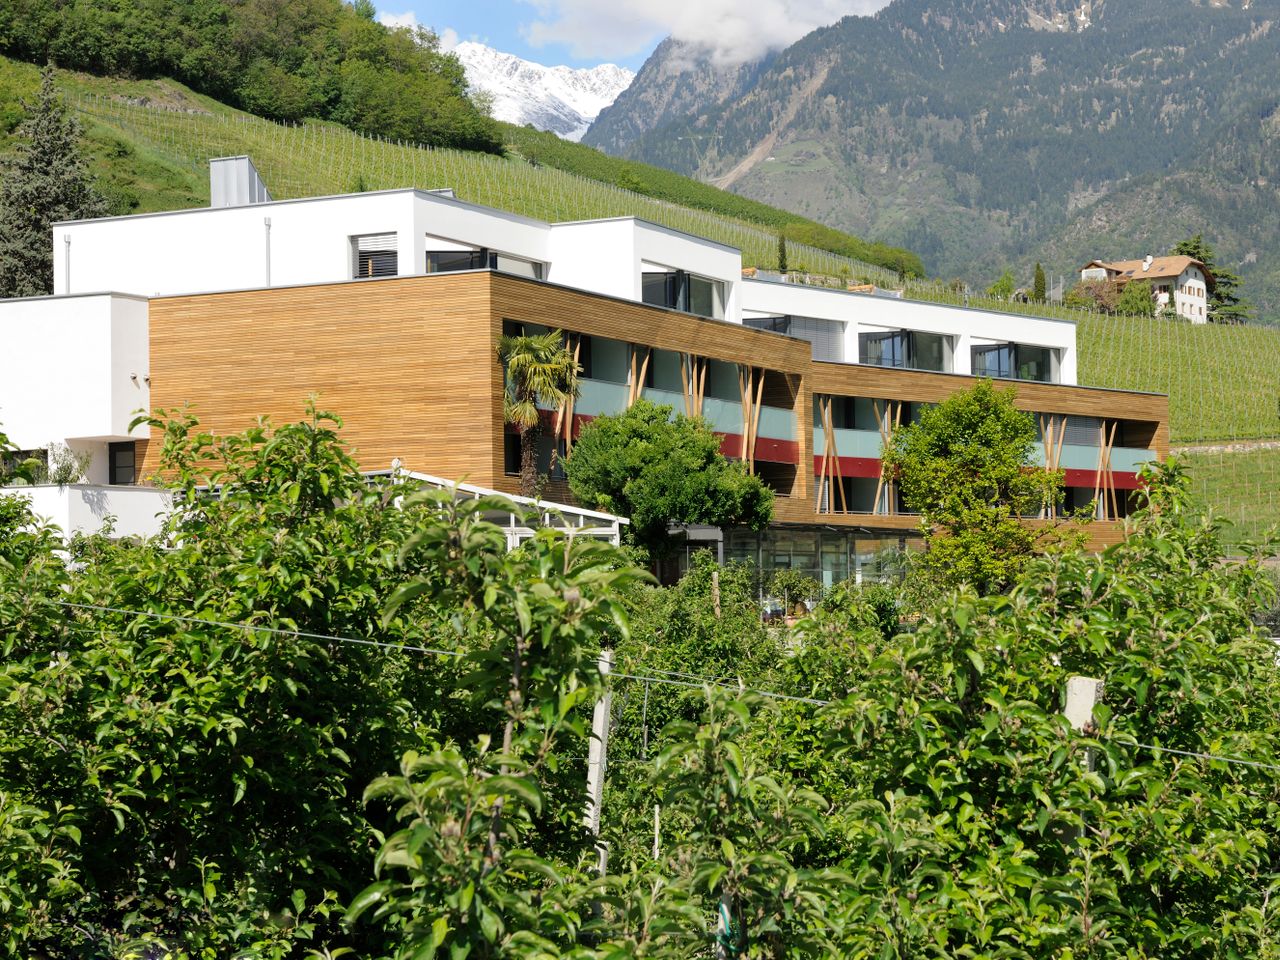 5 Tage Biken, genießen und entspannen in Südtirol